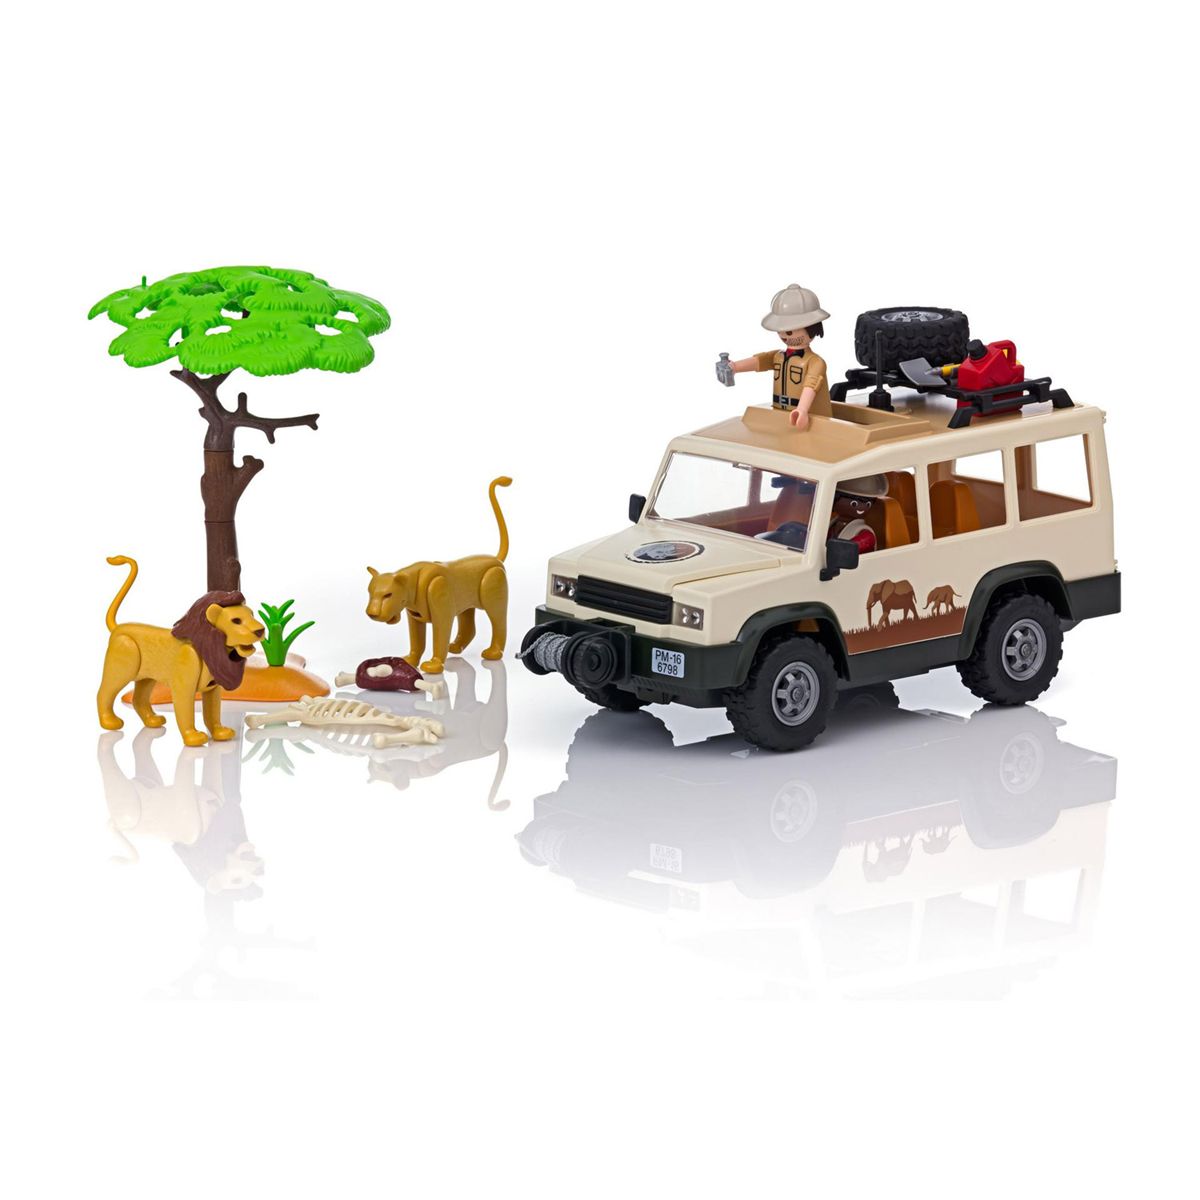 4x4 safari playmobil